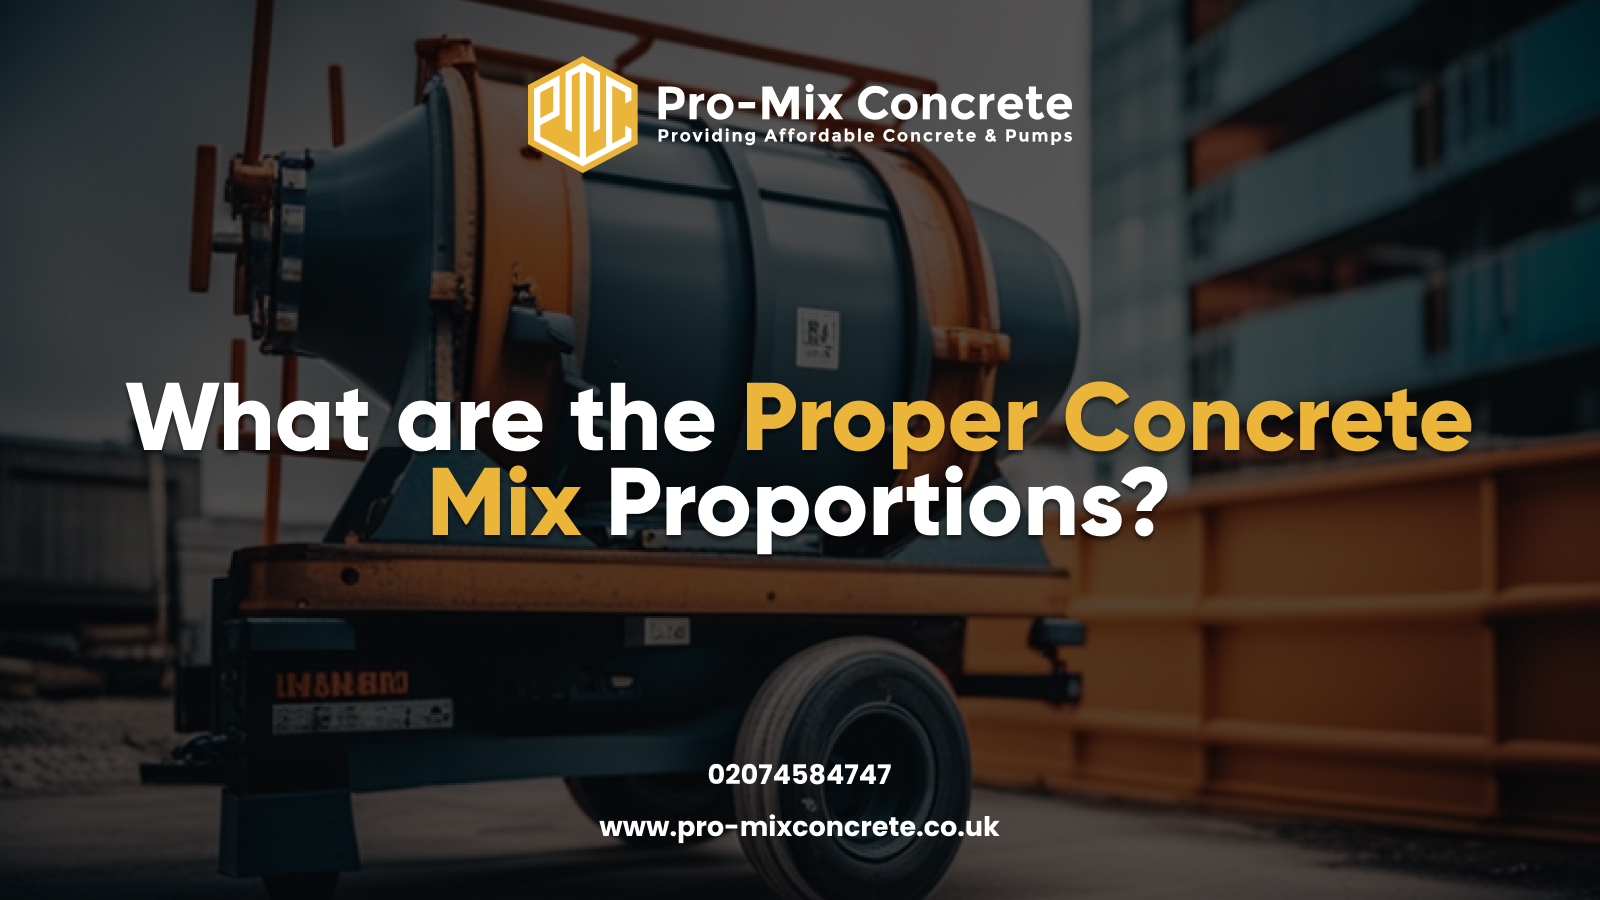 Pro-Mix Concrete